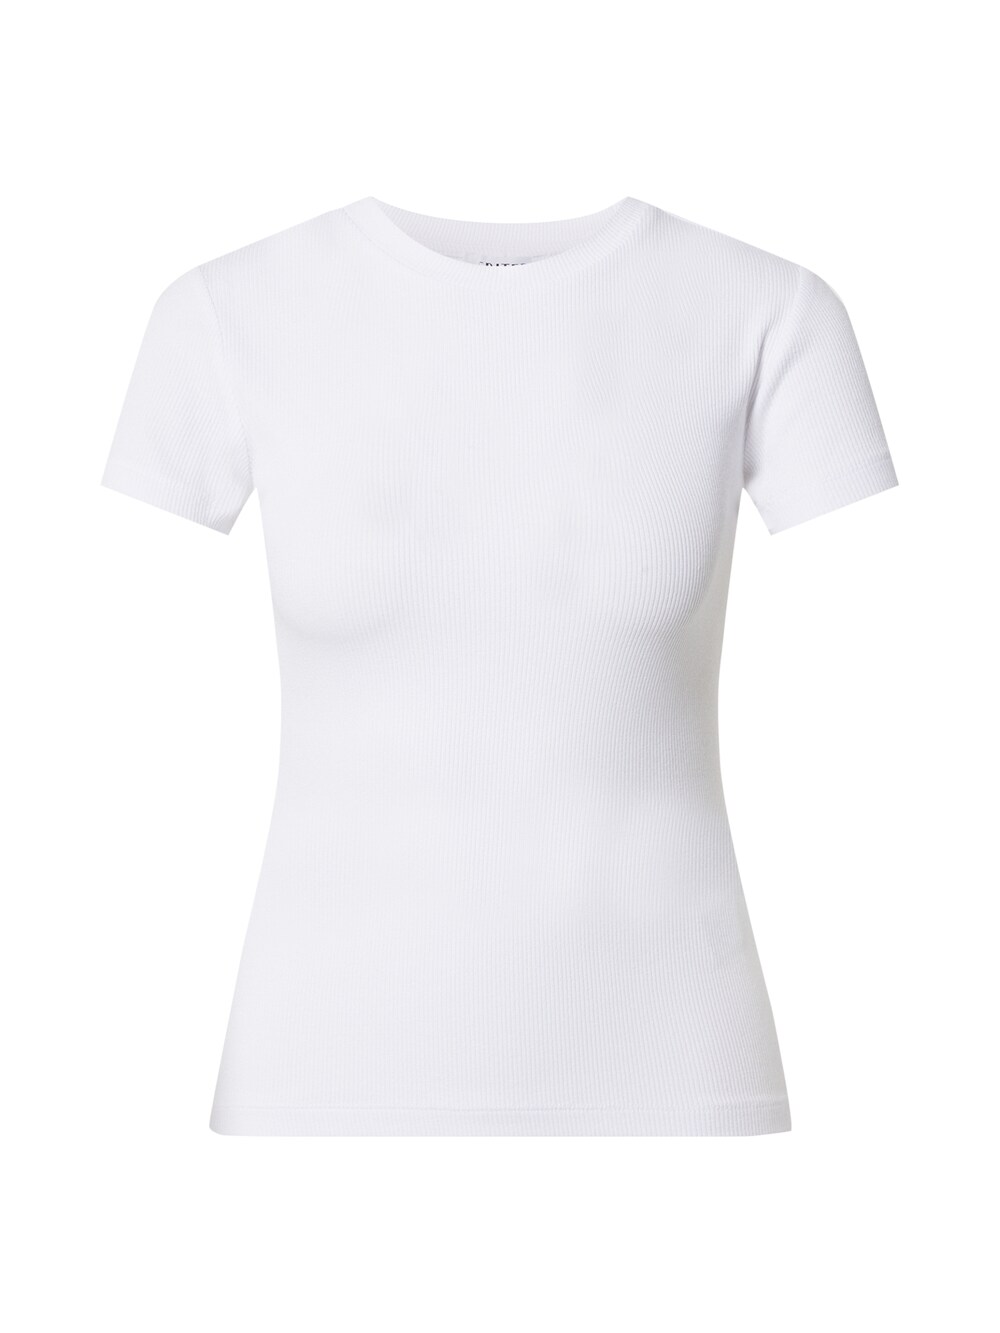 Рубашка EDITED Naara, белый рубашка edited ester белый